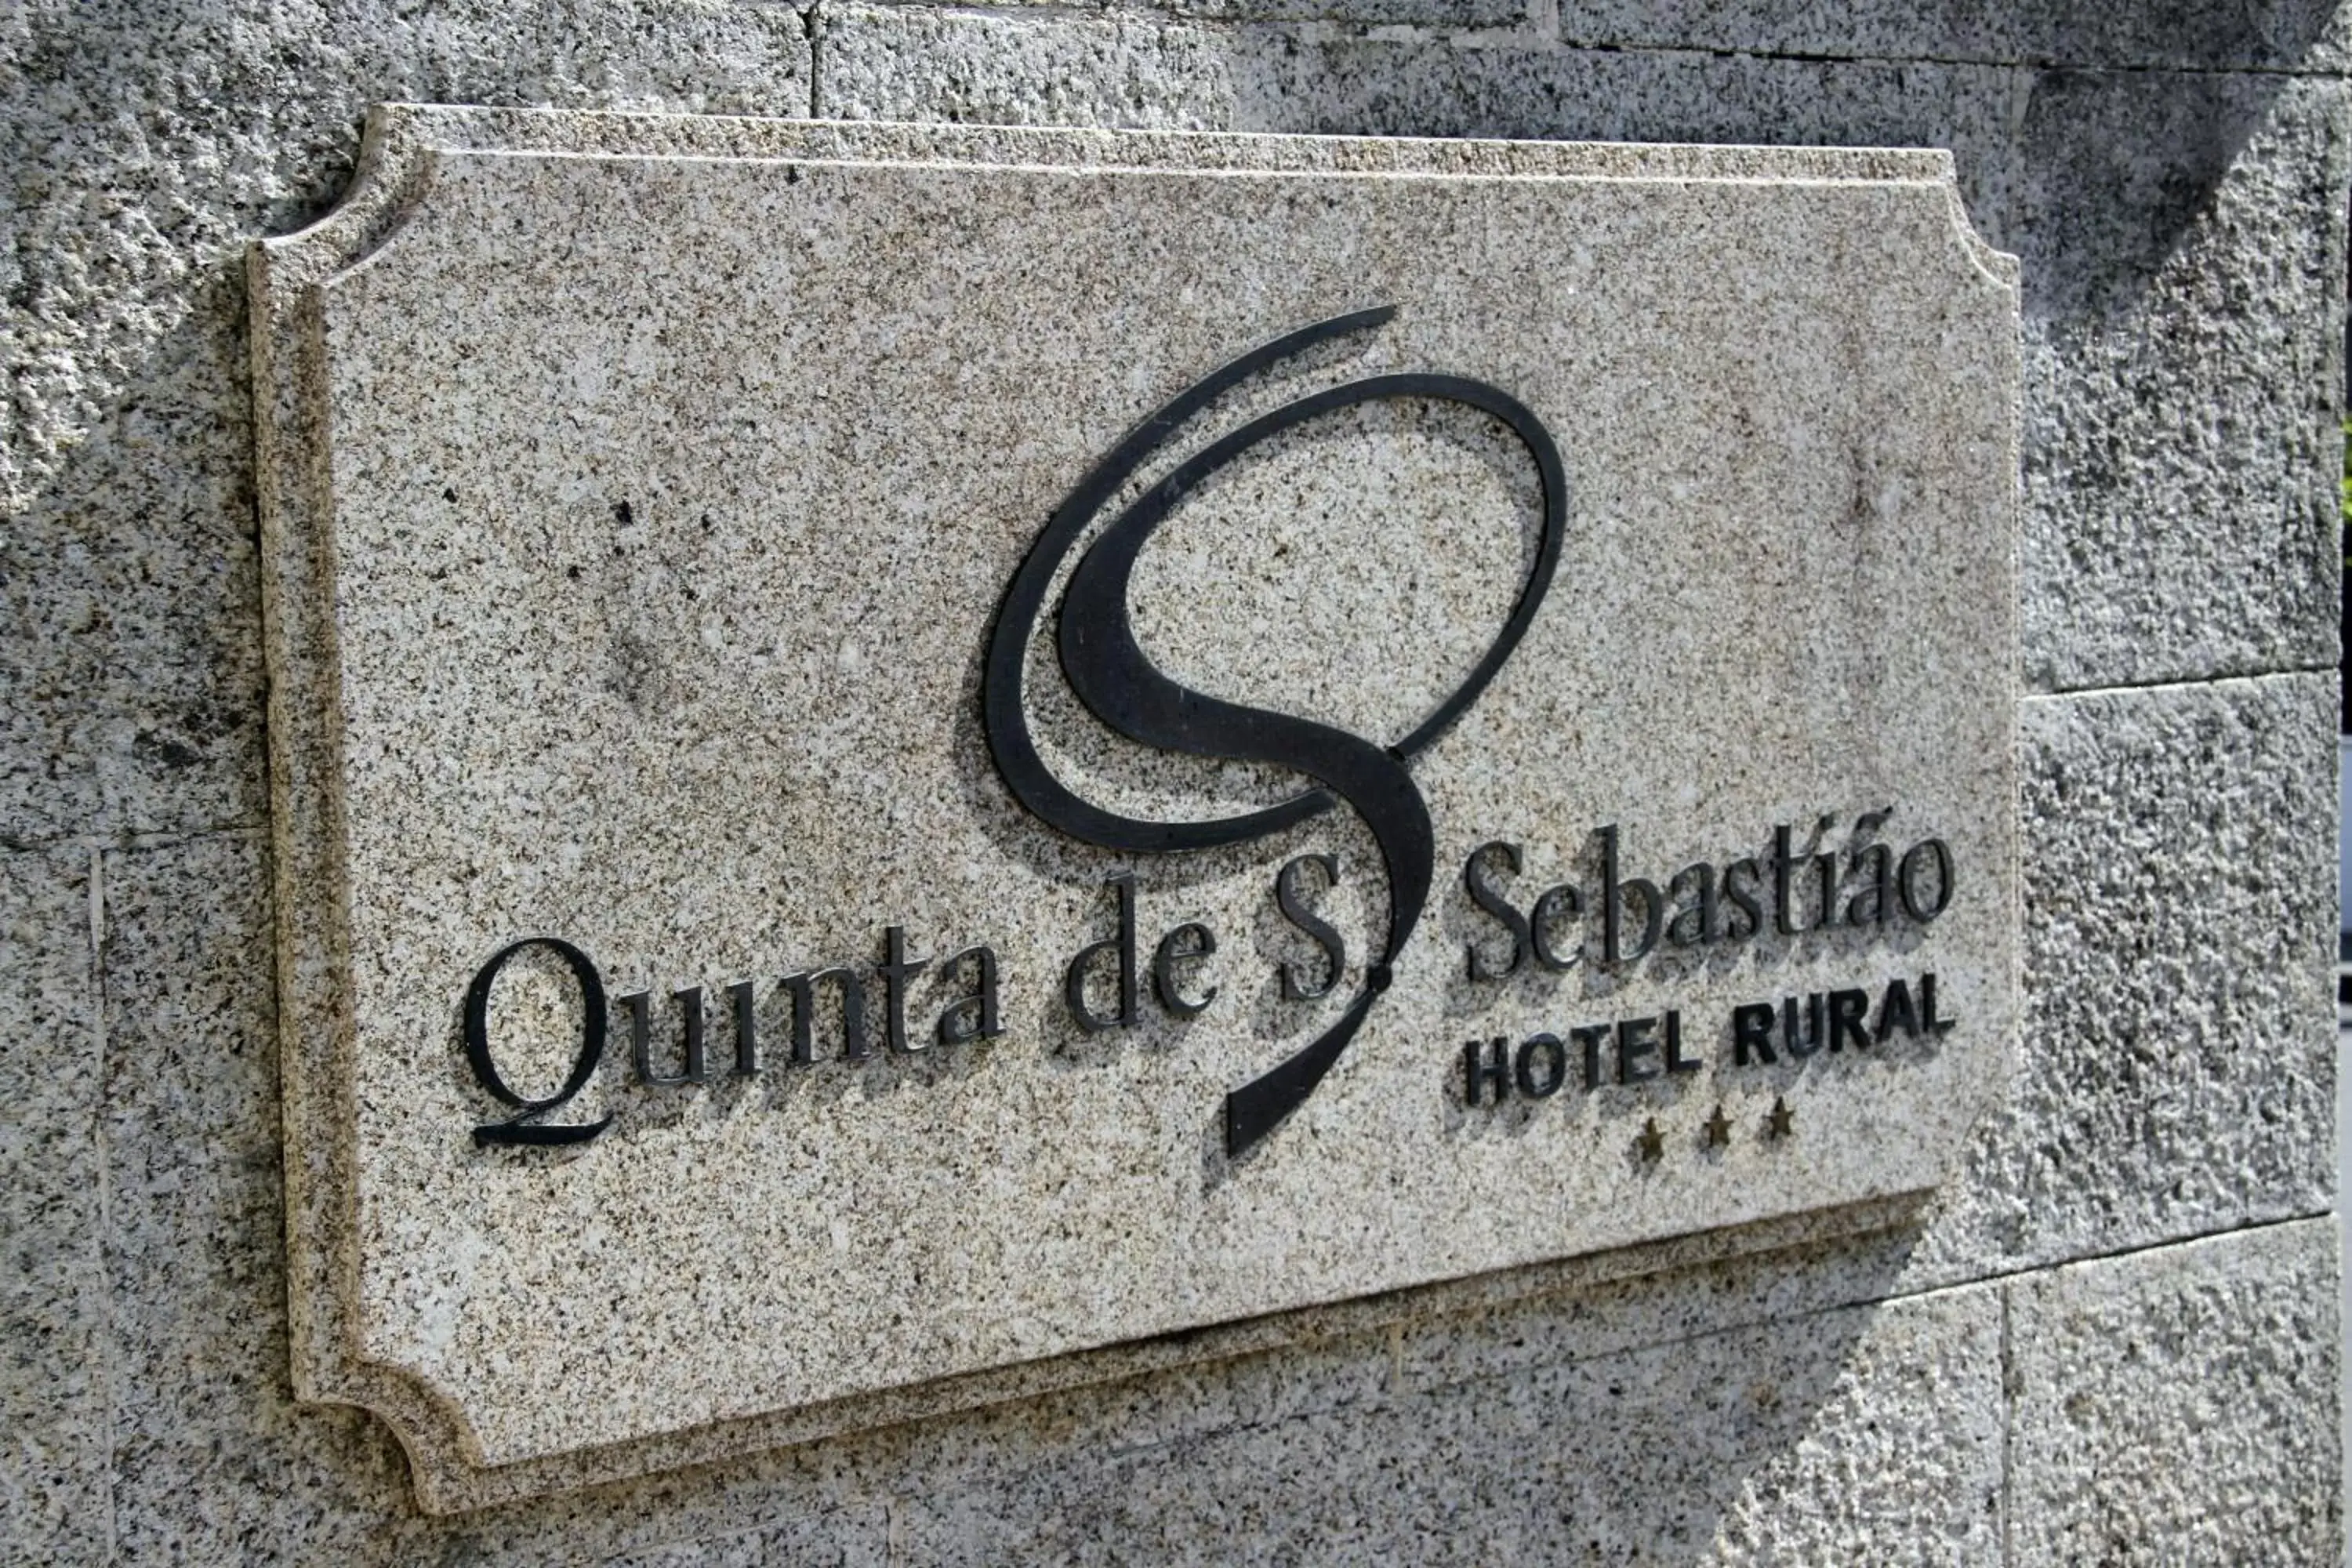 Property logo or sign, Property Logo/Sign in Hotel Rural Quinta de Sao Sebastiao